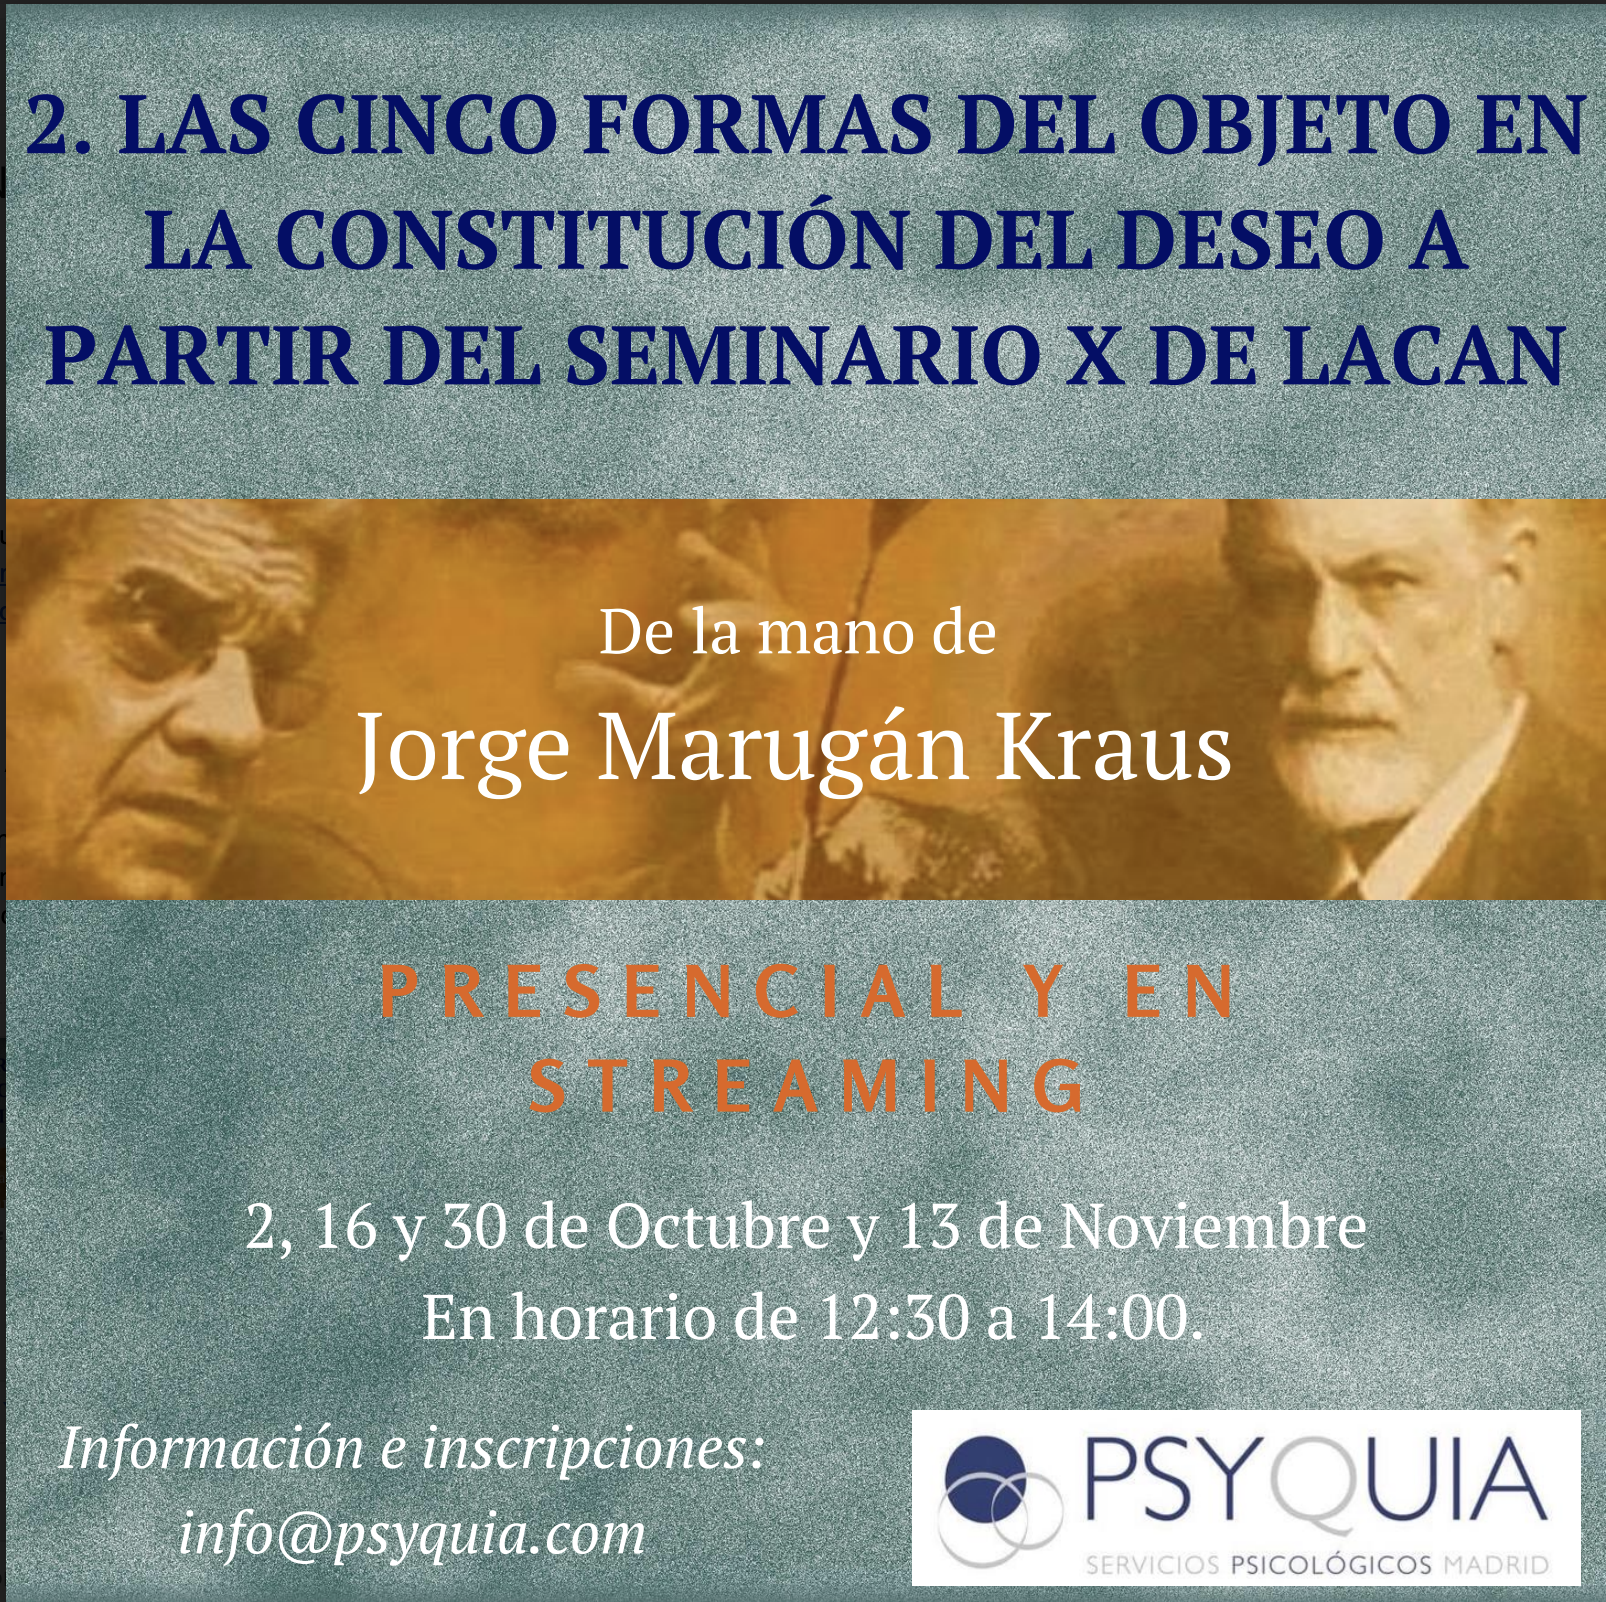 MONOGRAFICO (Parte 2): LAS CINCO FORMAS DEL OBJETO EN LA CONSTITUCIÓN DEL DESEO.  “Aportaciones de Jacques Lacan a la Clínica Psicoanalítica”-  Jorge Marugán